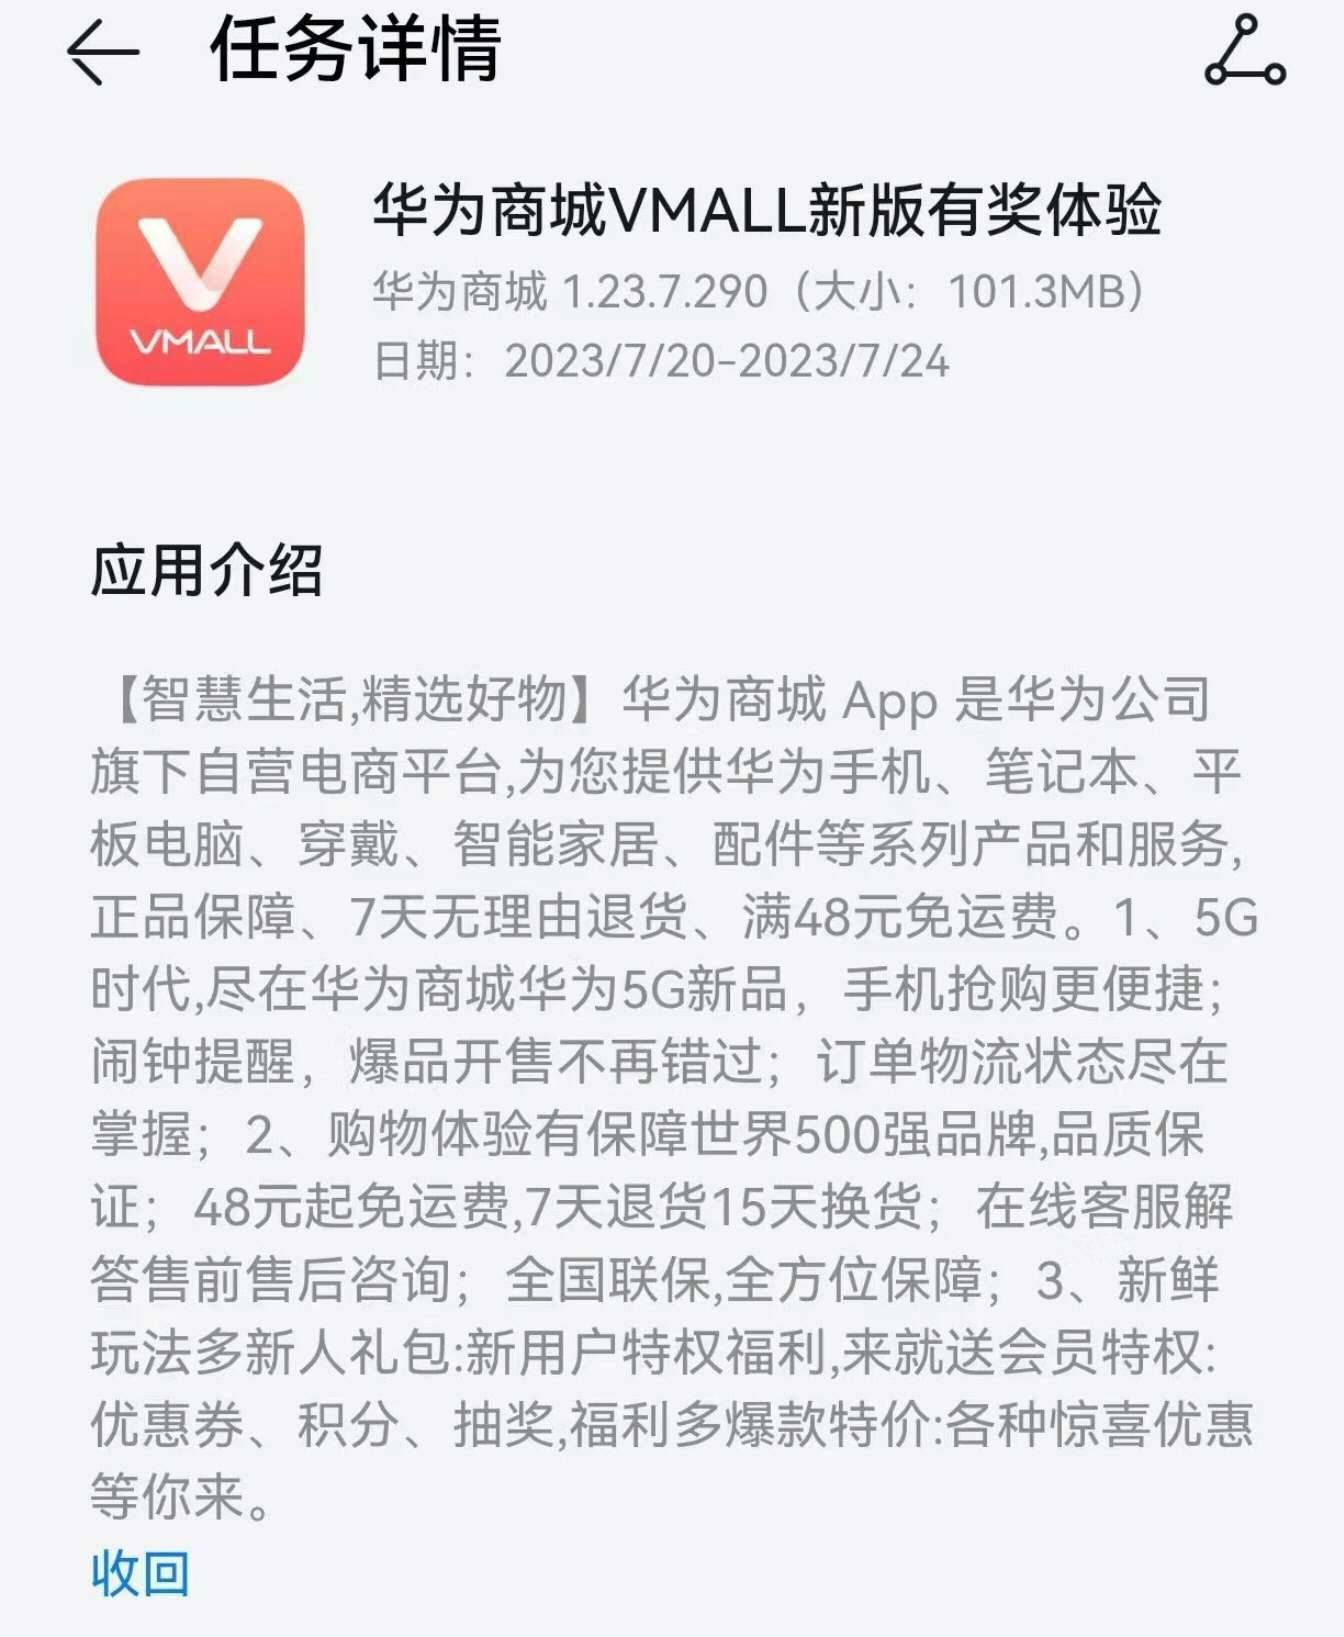 JBO竞博华为商城 App 新版众测暗示 5G 新品(图1)